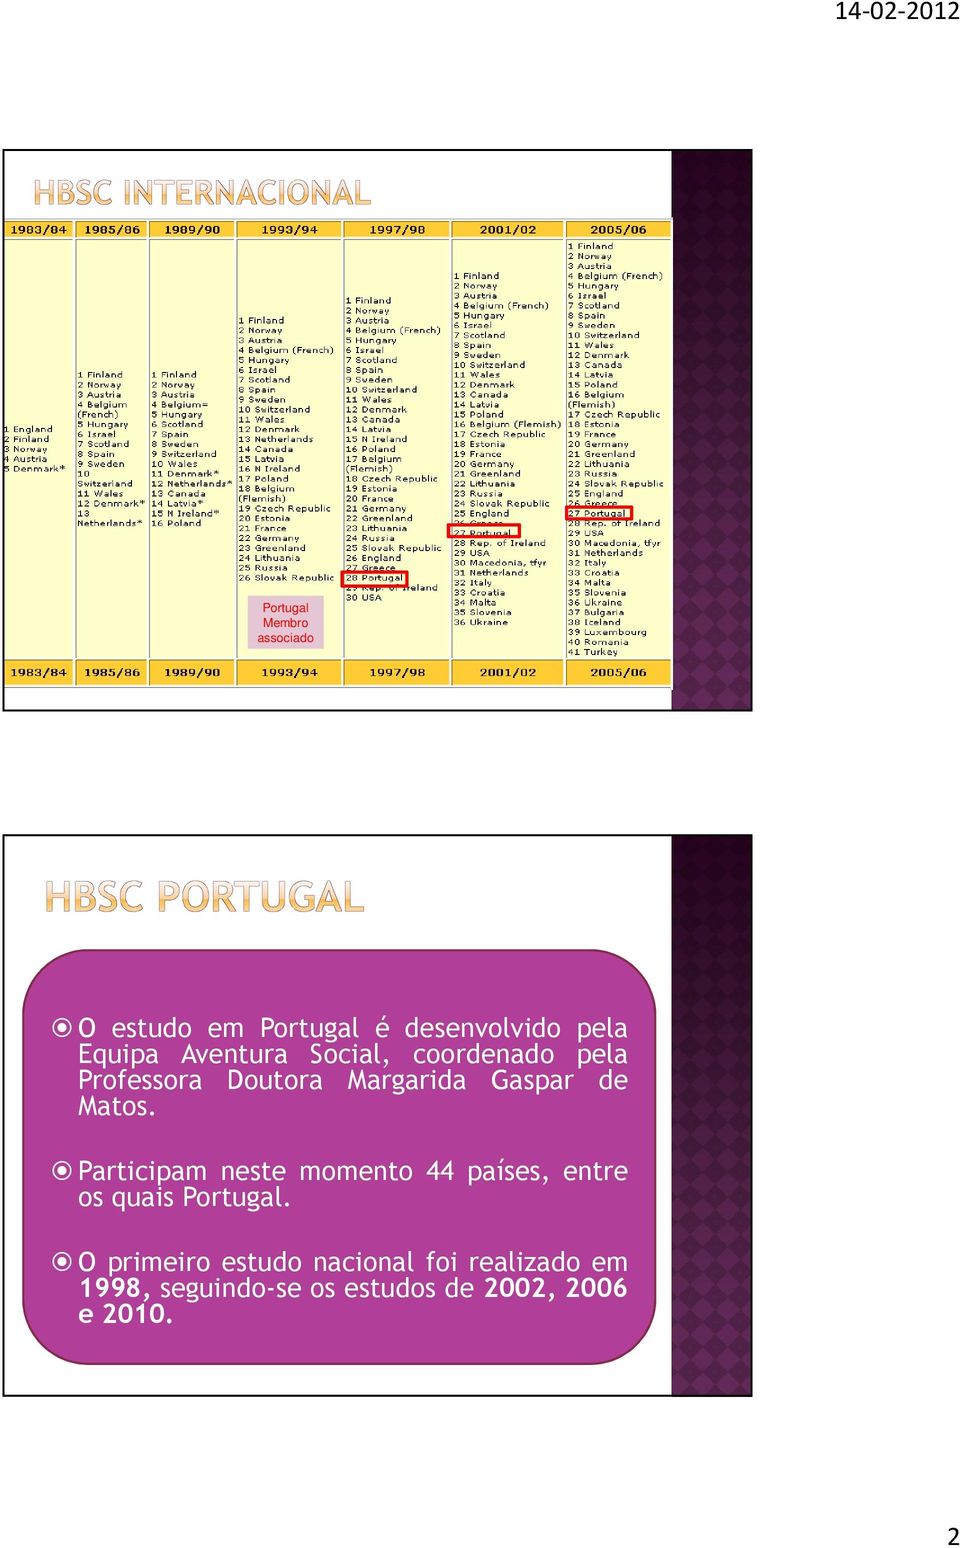 Participam neste momento 44 países, entre os quais Portugal.